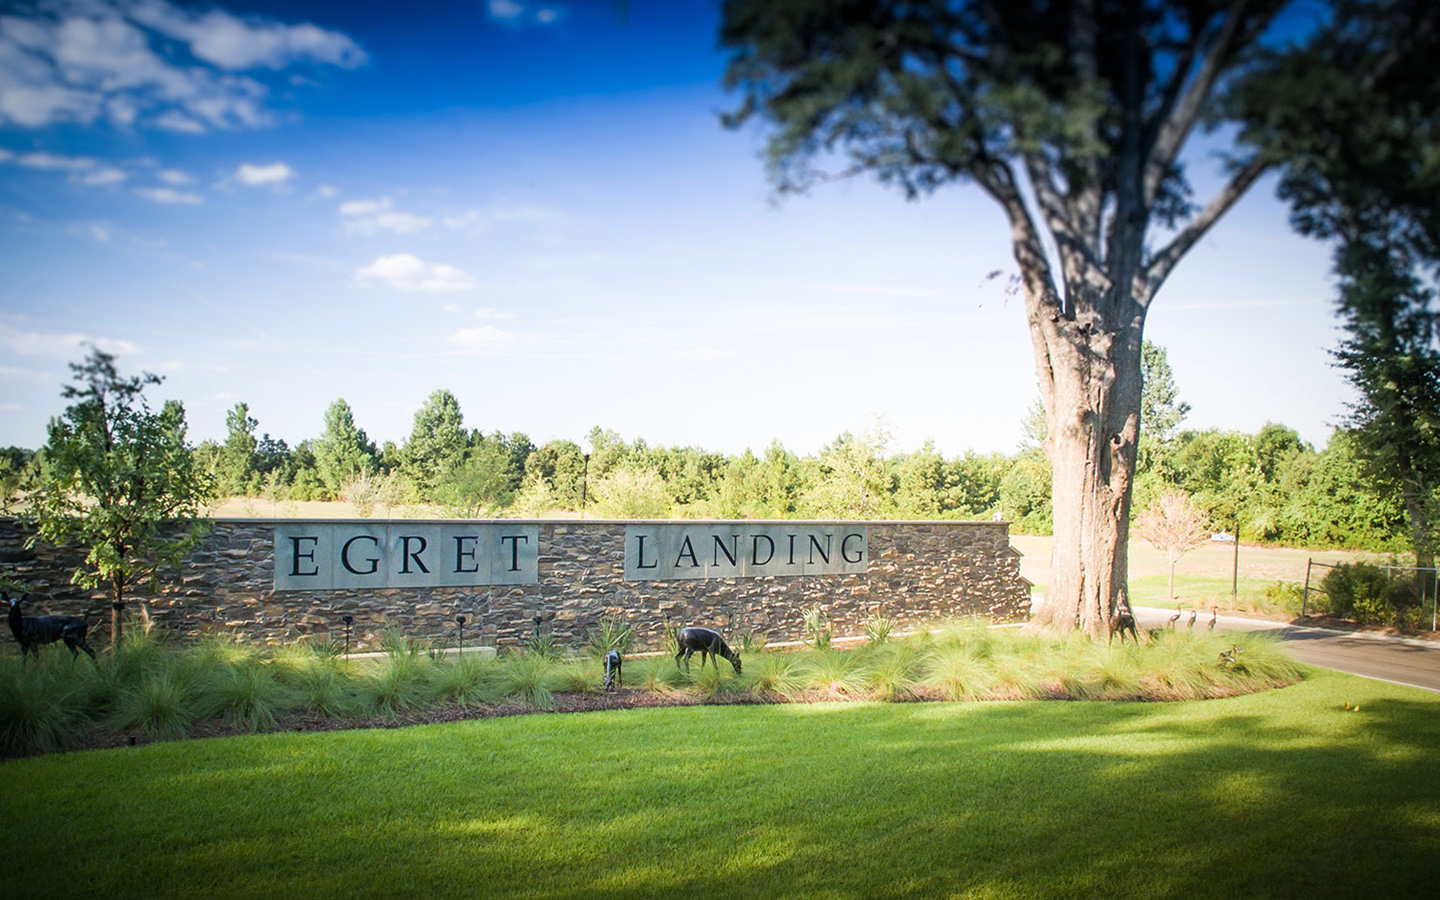 Photo of Egret Landing entryway signage